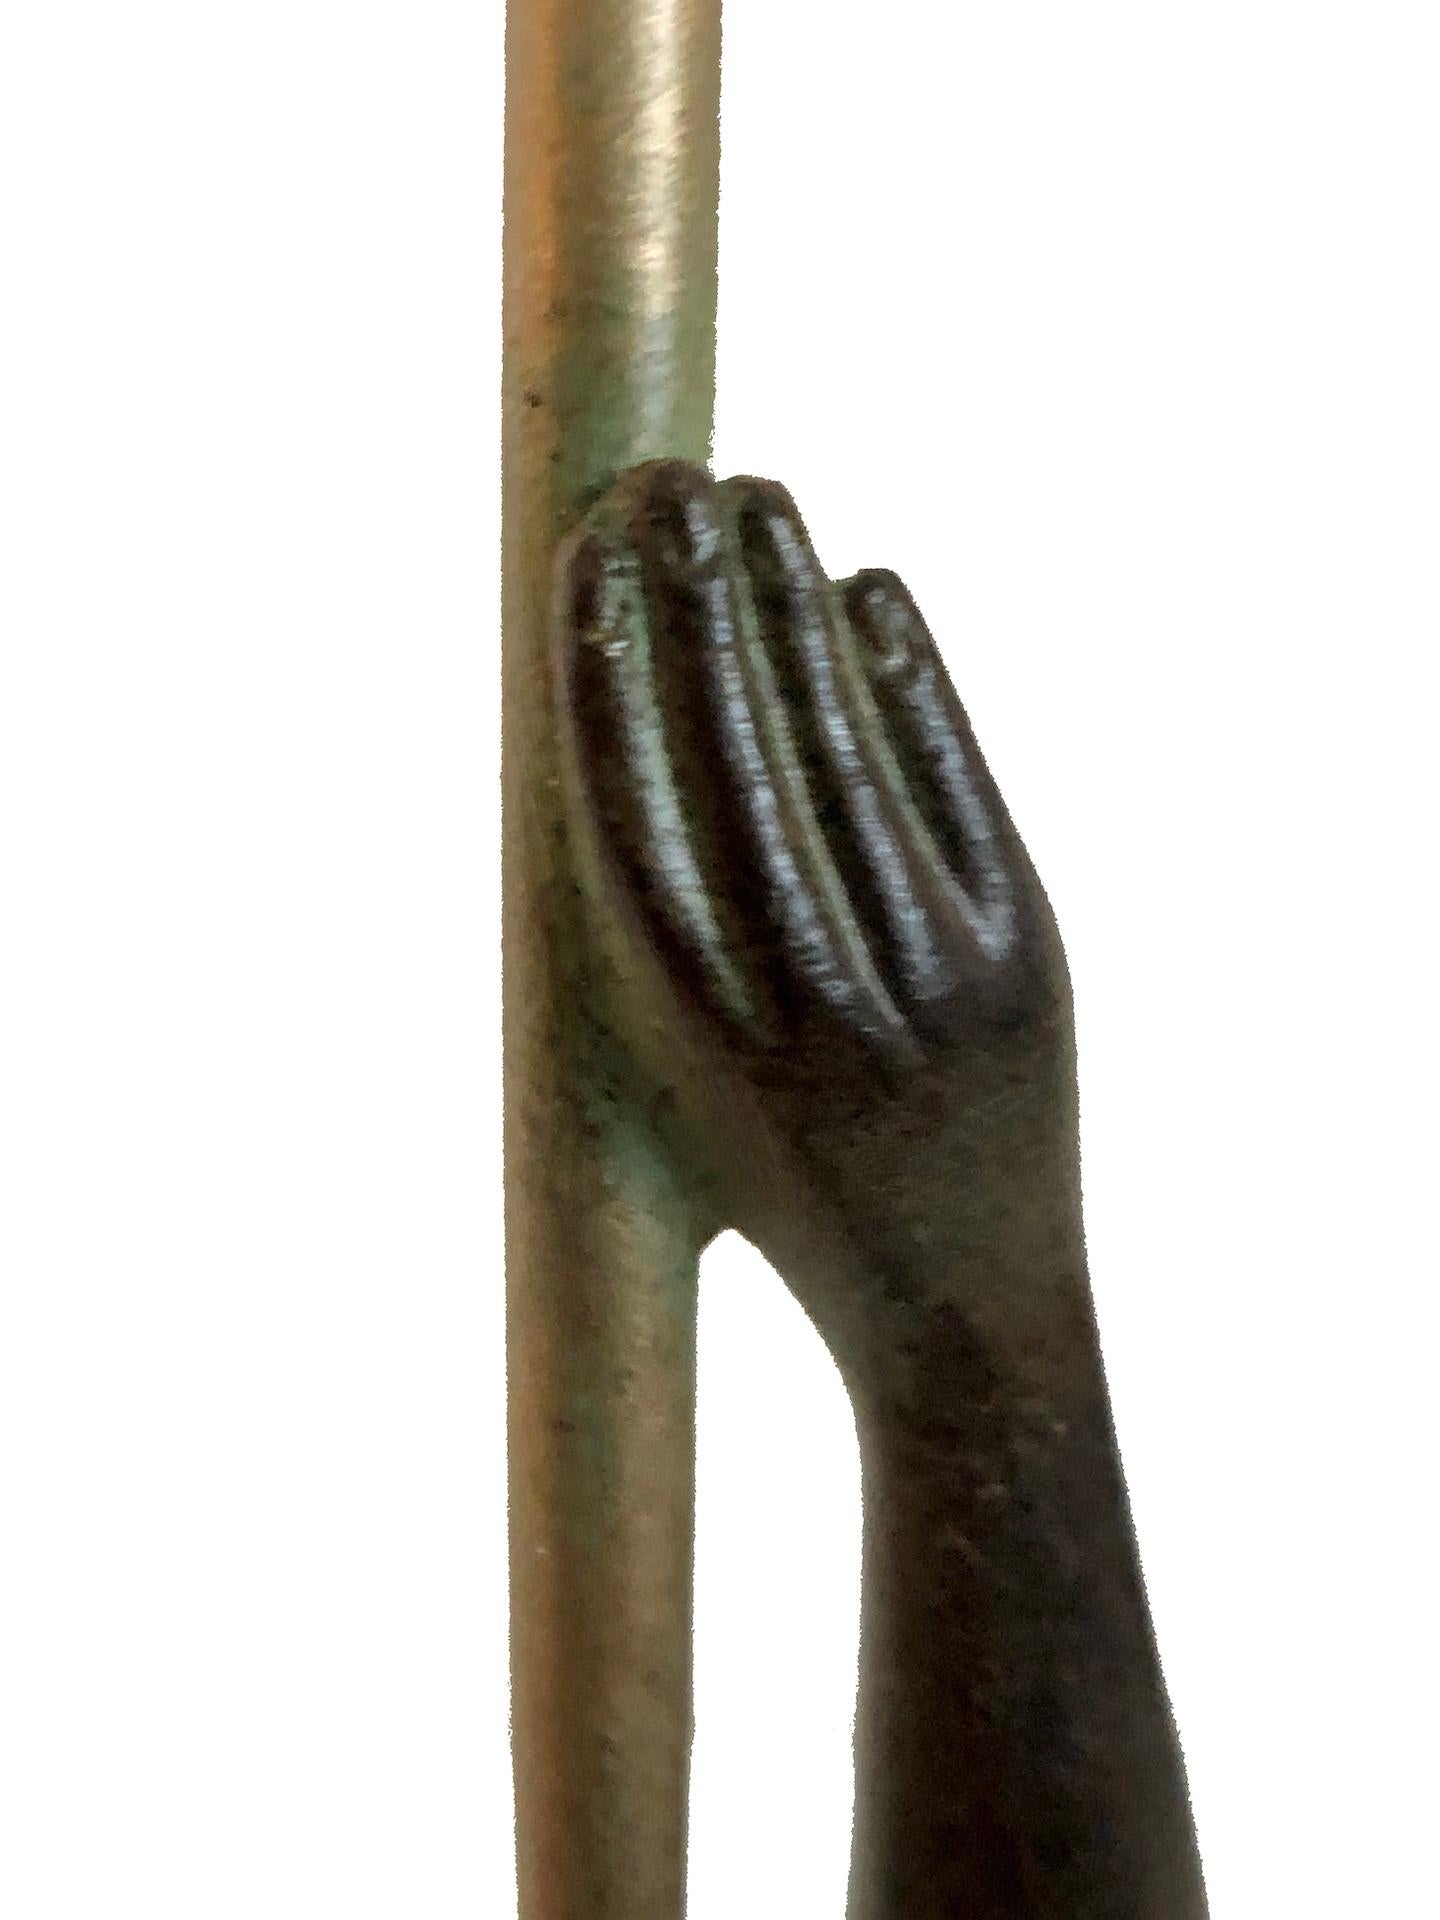 Zinc brut Sculpture trompette de Jericho de Raymonde Guerbe par Max Le Verrier de style Art Déco